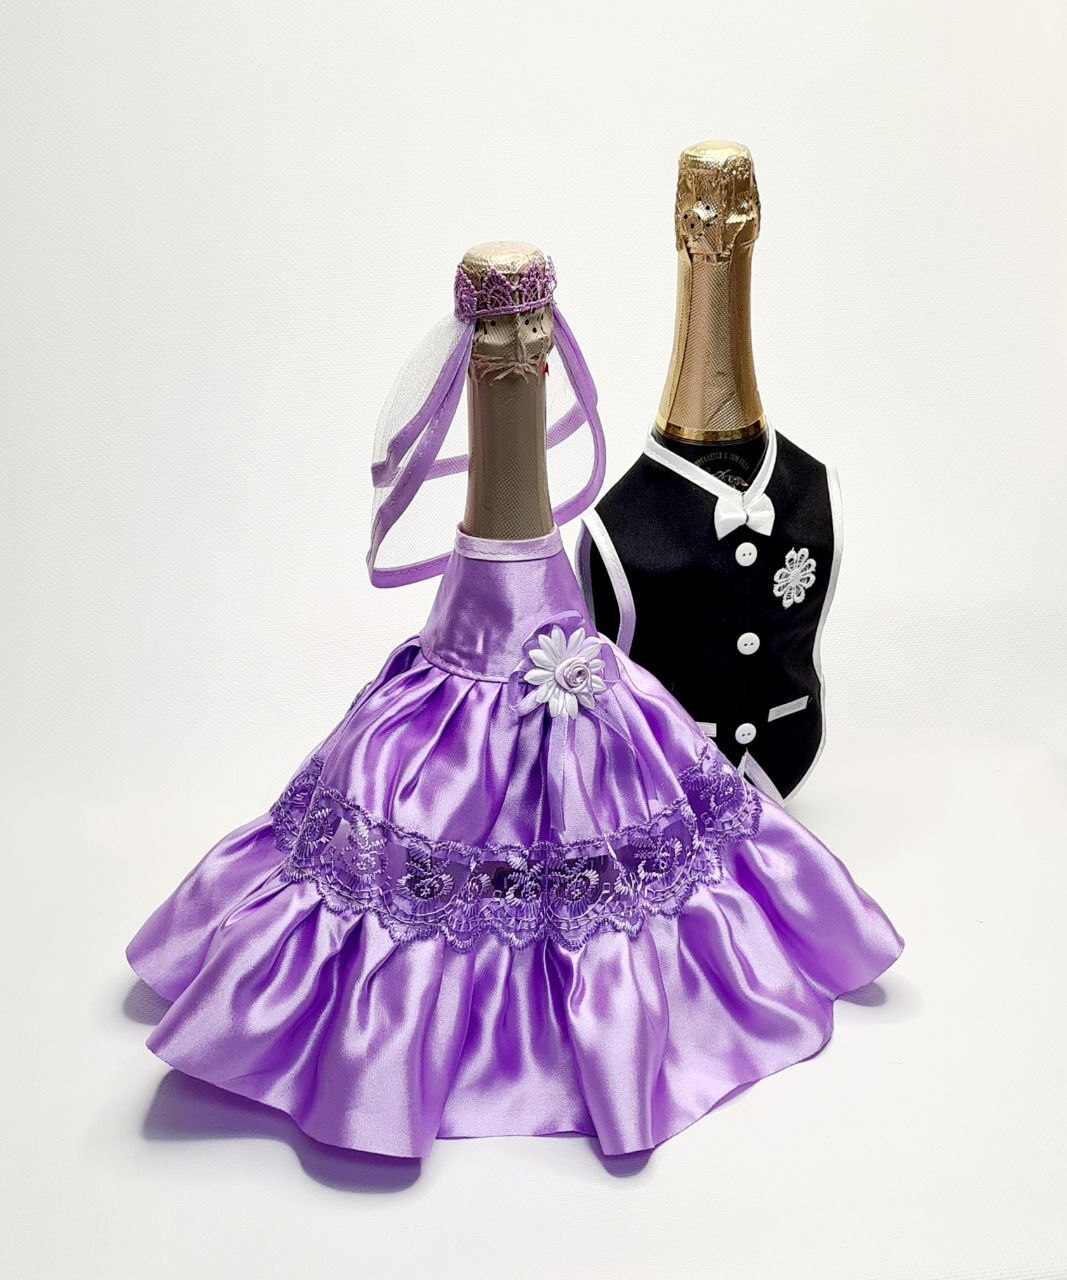 Пиджак жениха и платье невесты для бутылок шампанского на свадьбу в красном цвете